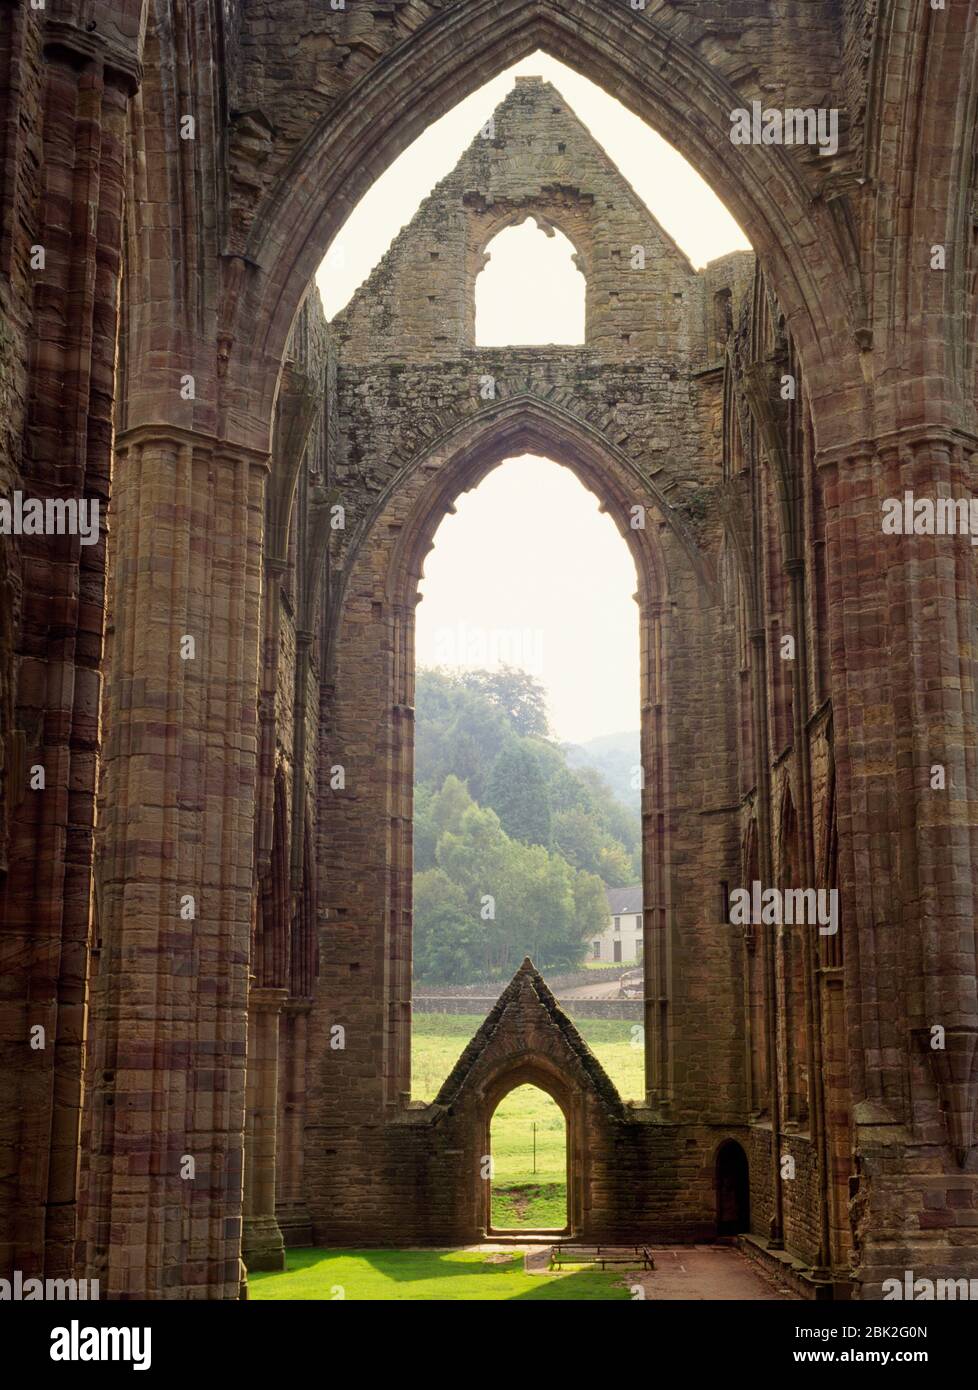 Vista S, dal transetto N, del transetto di traversata & S della chiesa monastica cistercense dell'abbazia di Tintern, Monmouthshire, Galles, Regno Unito. Fondata nel 1131. Foto Stock